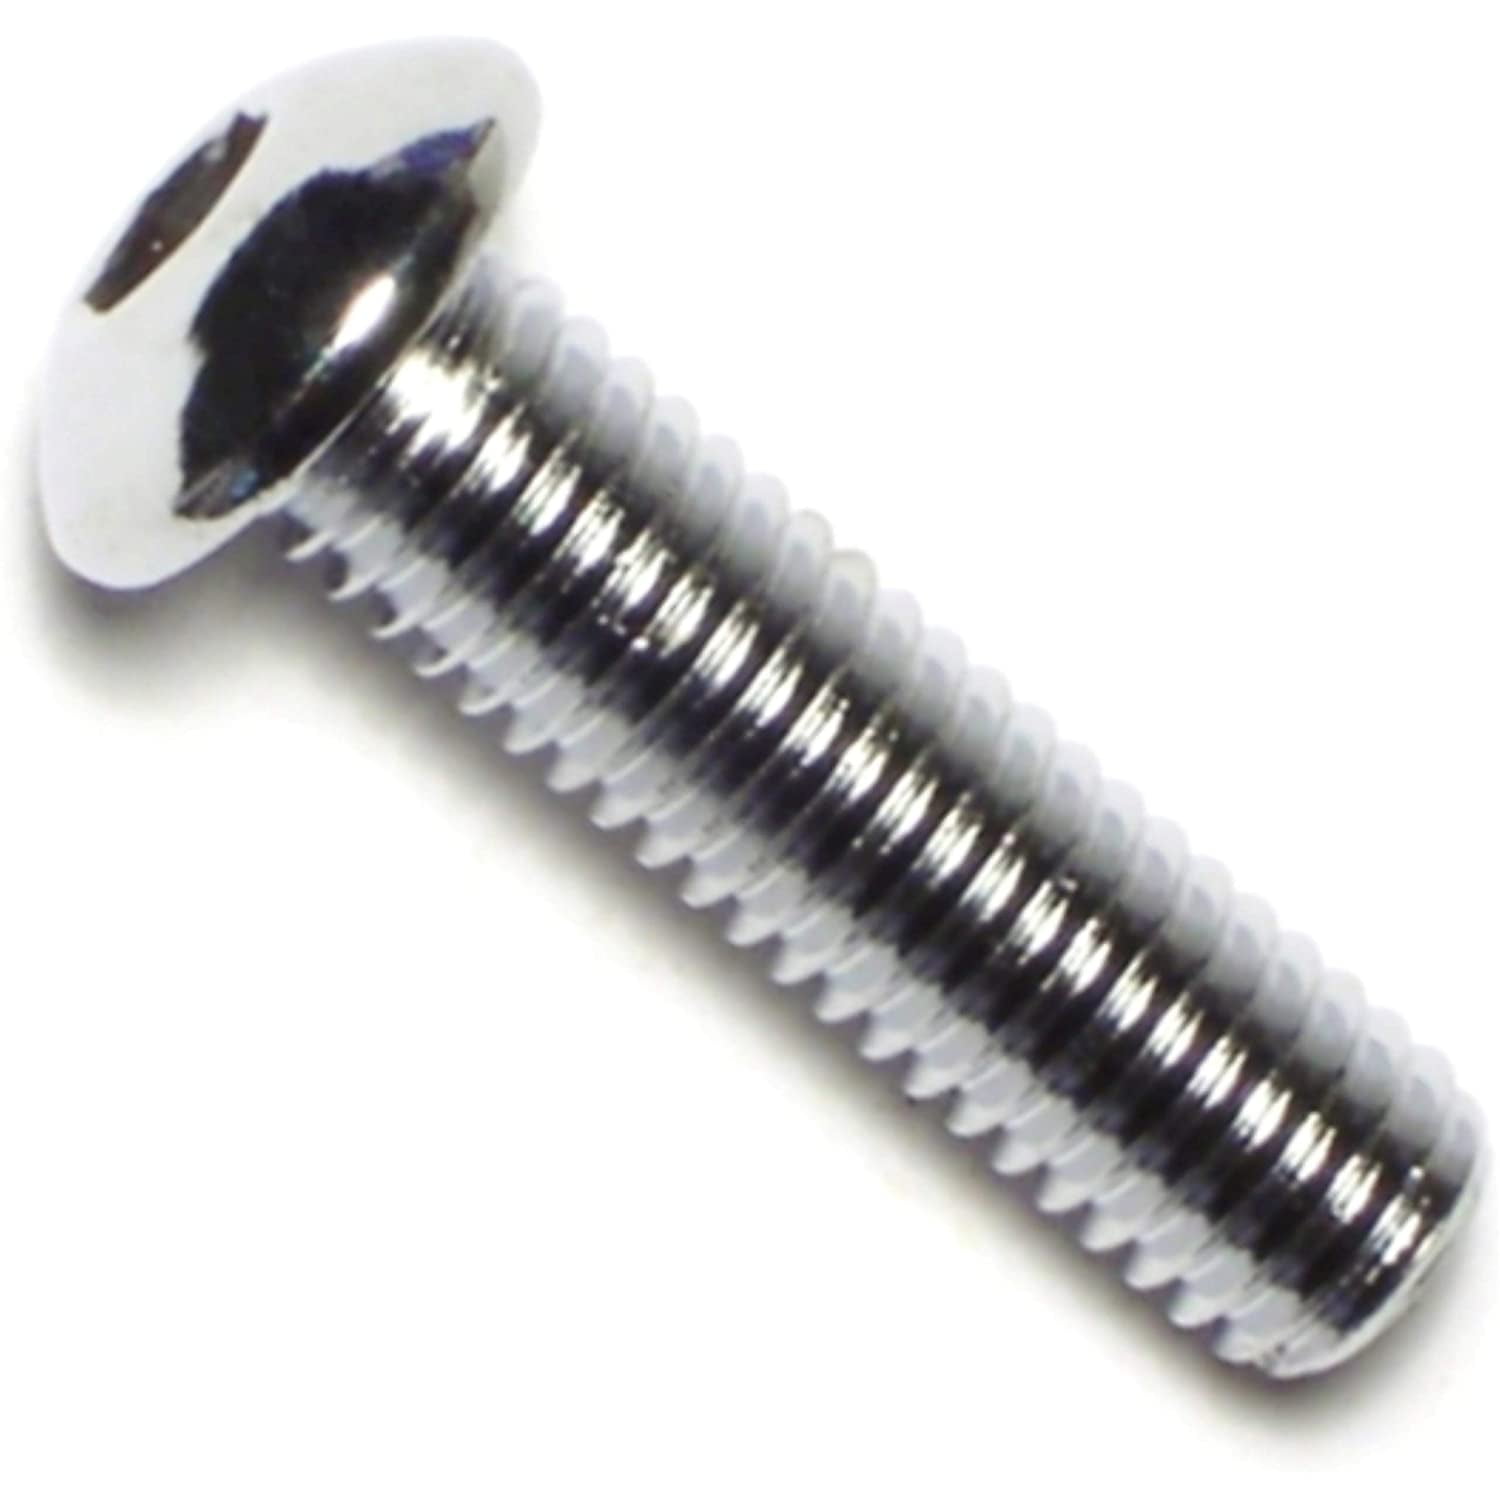 8mm-1.25 x 30mm Piece-10 Hard-to-Find Fastener 014973136185 Coarse Metric Button Head Screws 